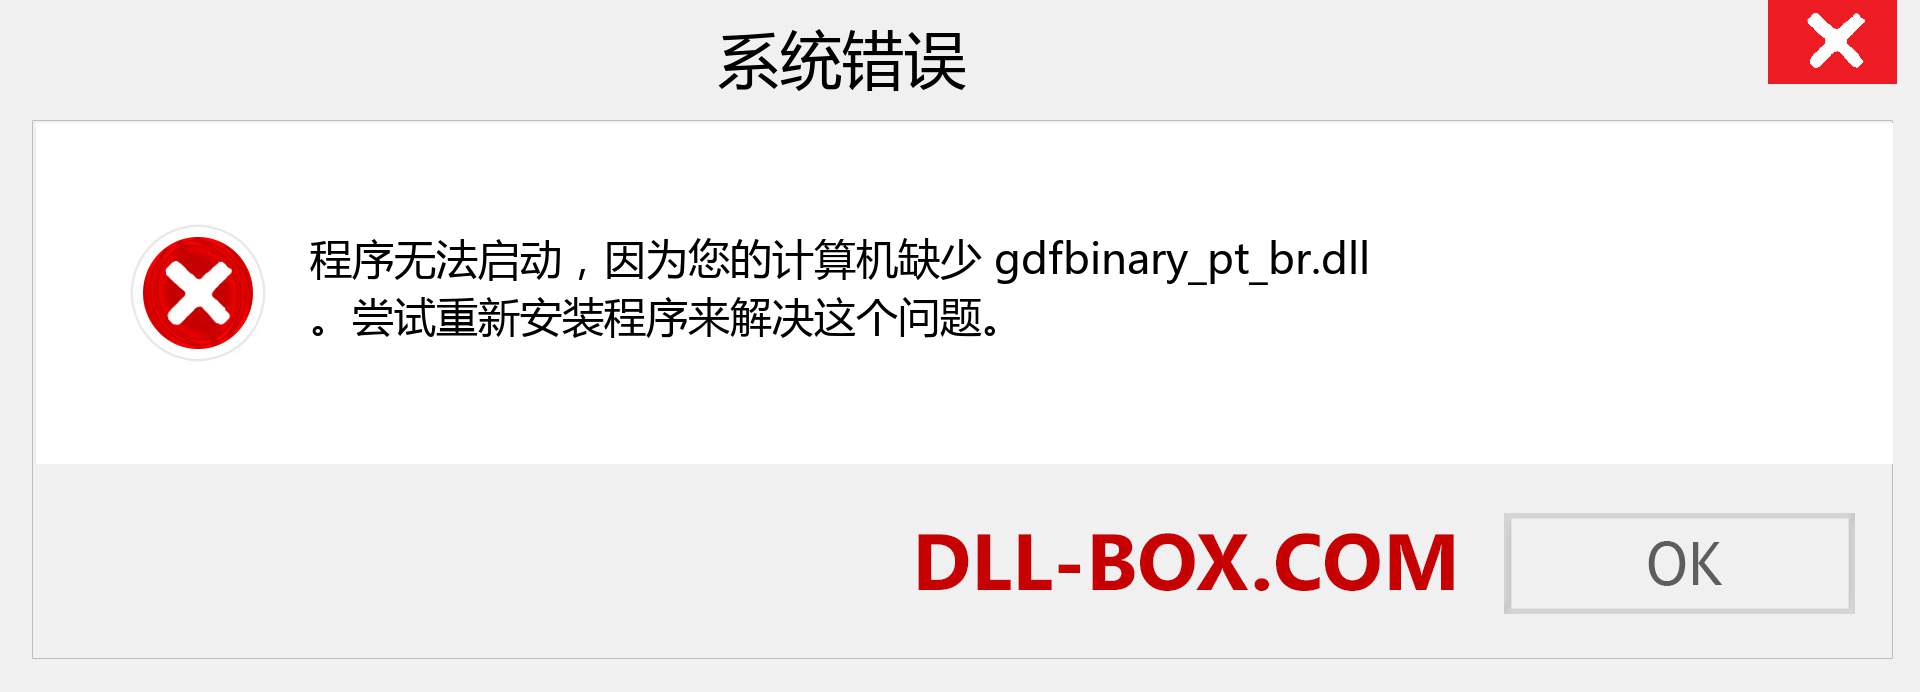 gdfbinary_pt_br.dll 文件丢失？。 适用于 Windows 7、8、10 的下载 - 修复 Windows、照片、图像上的 gdfbinary_pt_br dll 丢失错误